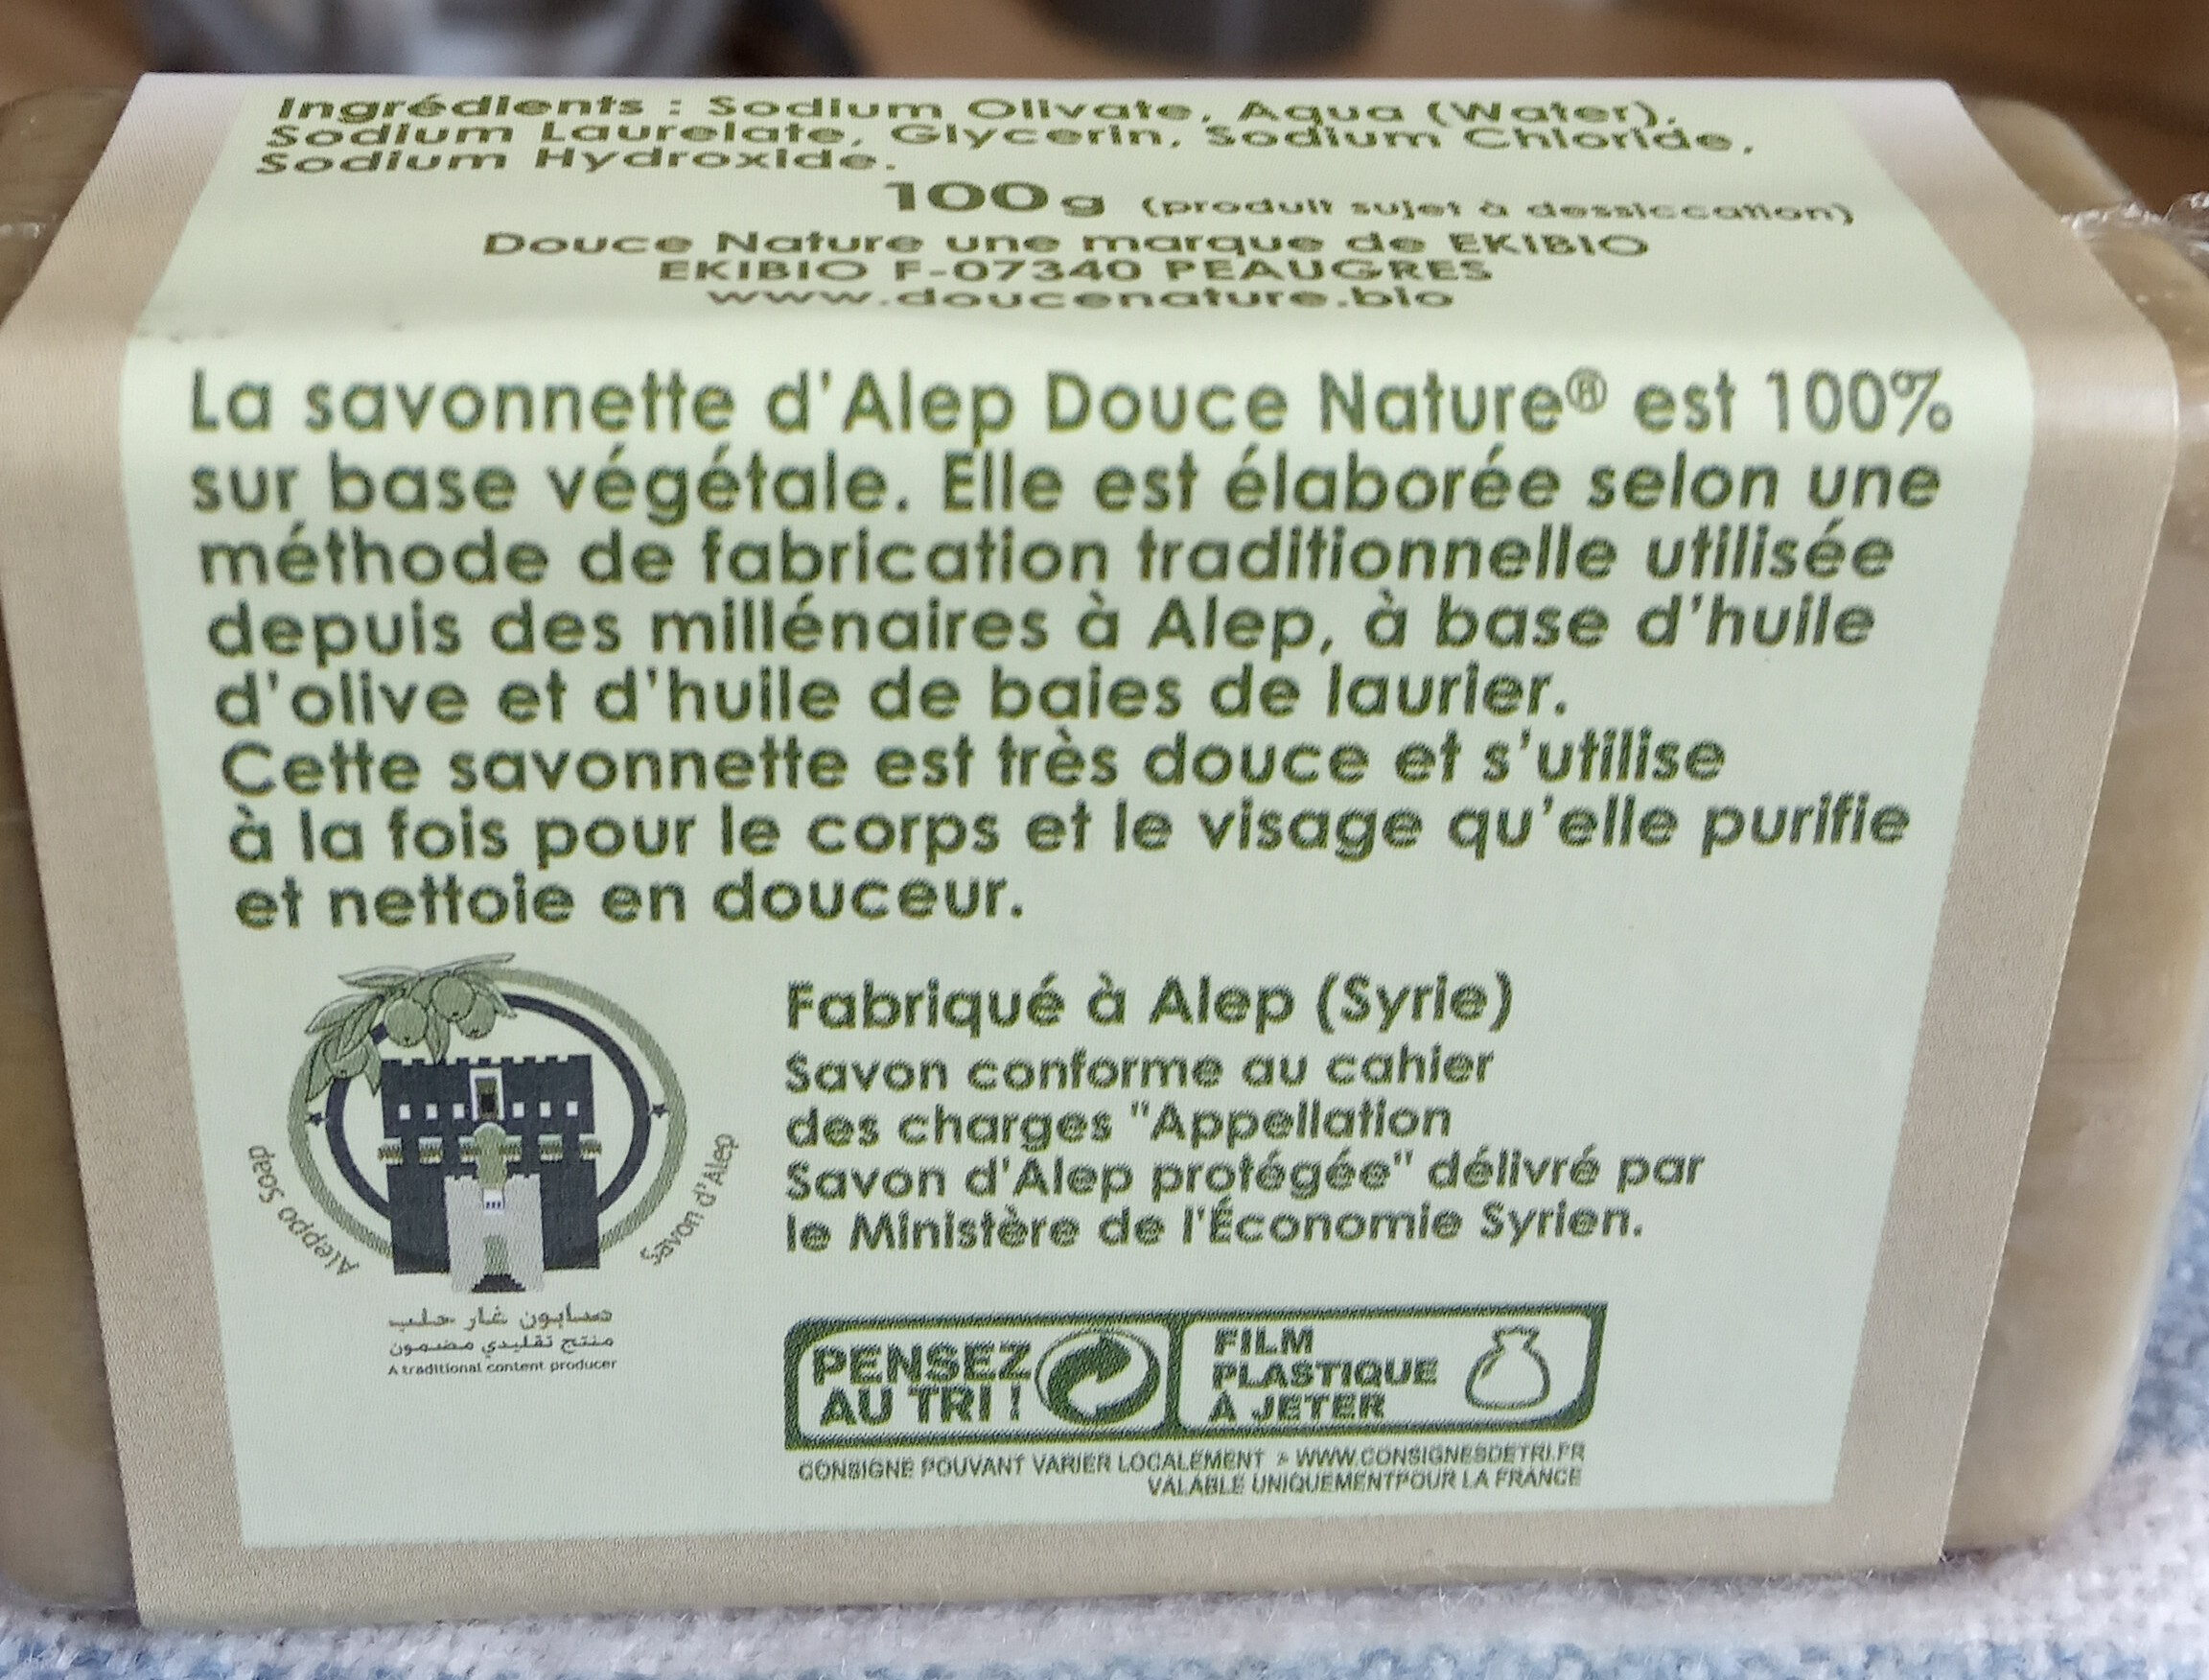 La savonnette d'Alep - Product - en